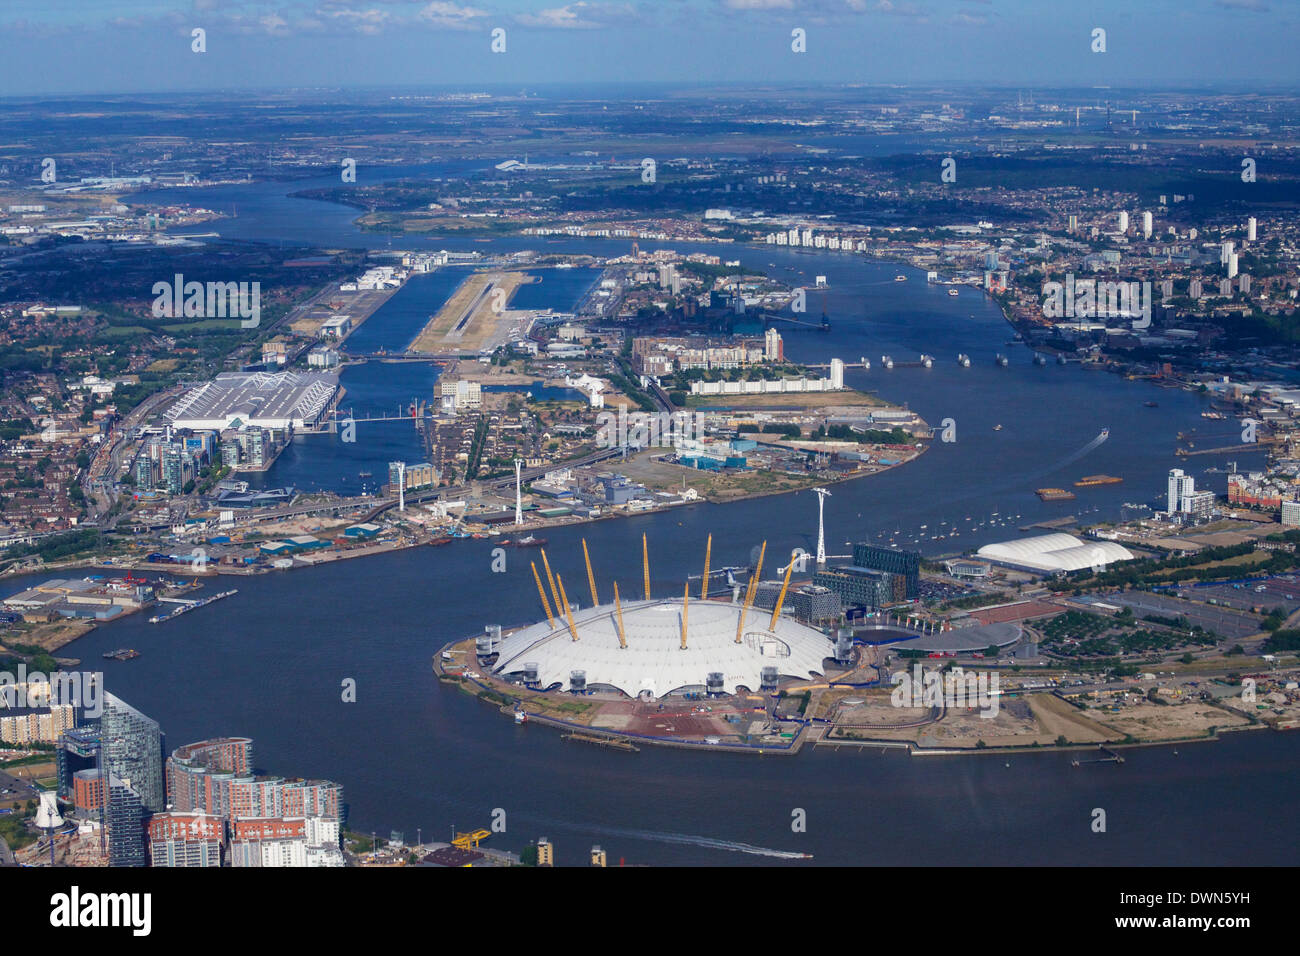 Vue aérienne de l'aéroport de London City et de l'O2 Arena, London, Angleterre, Royaume-Uni, Europe Banque D'Images